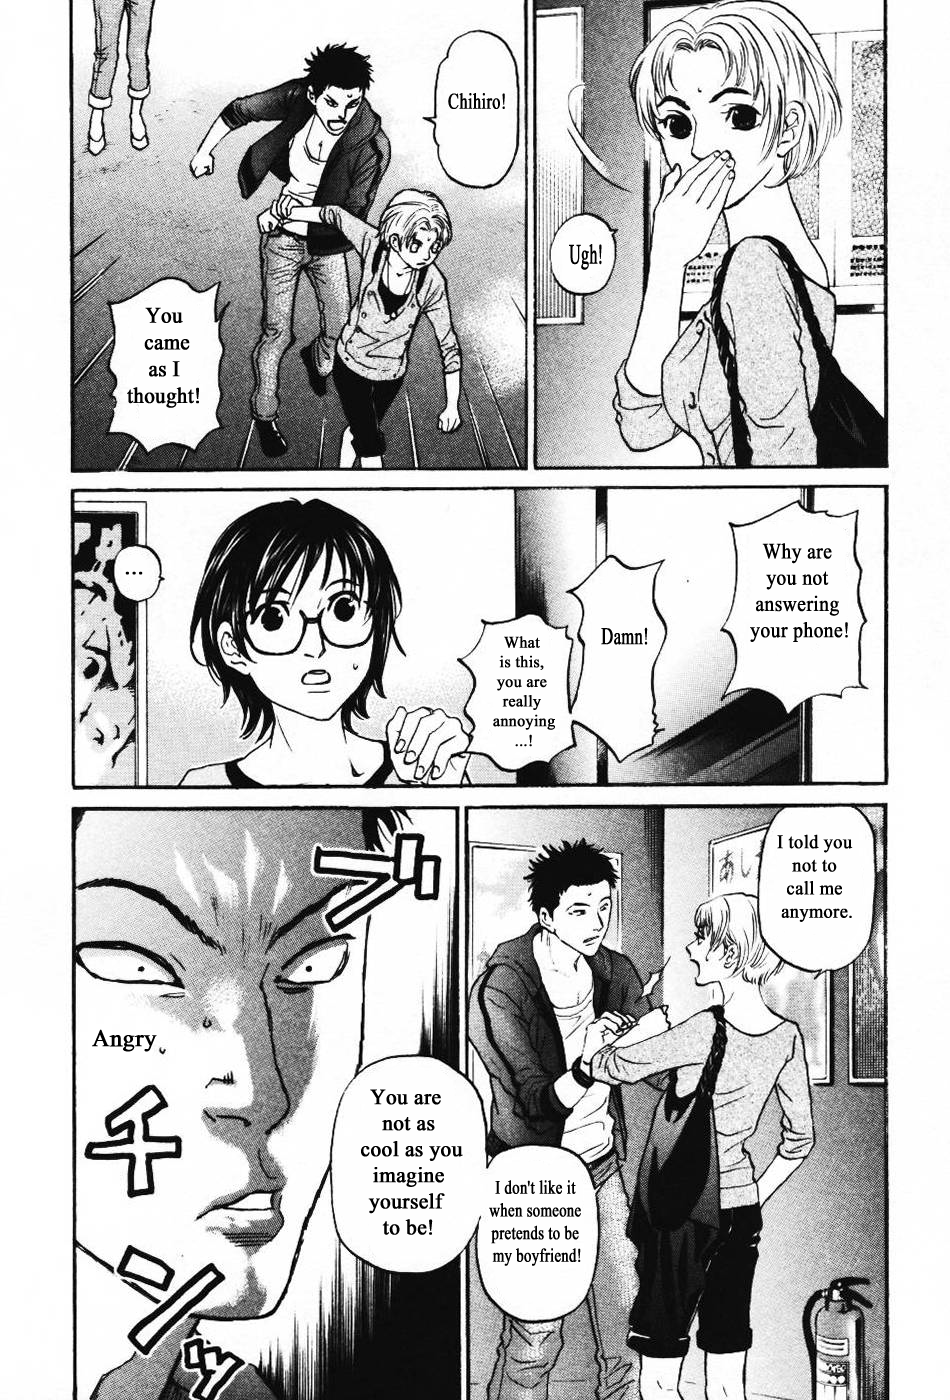 Haruka 17 Chapter 137 - page 10